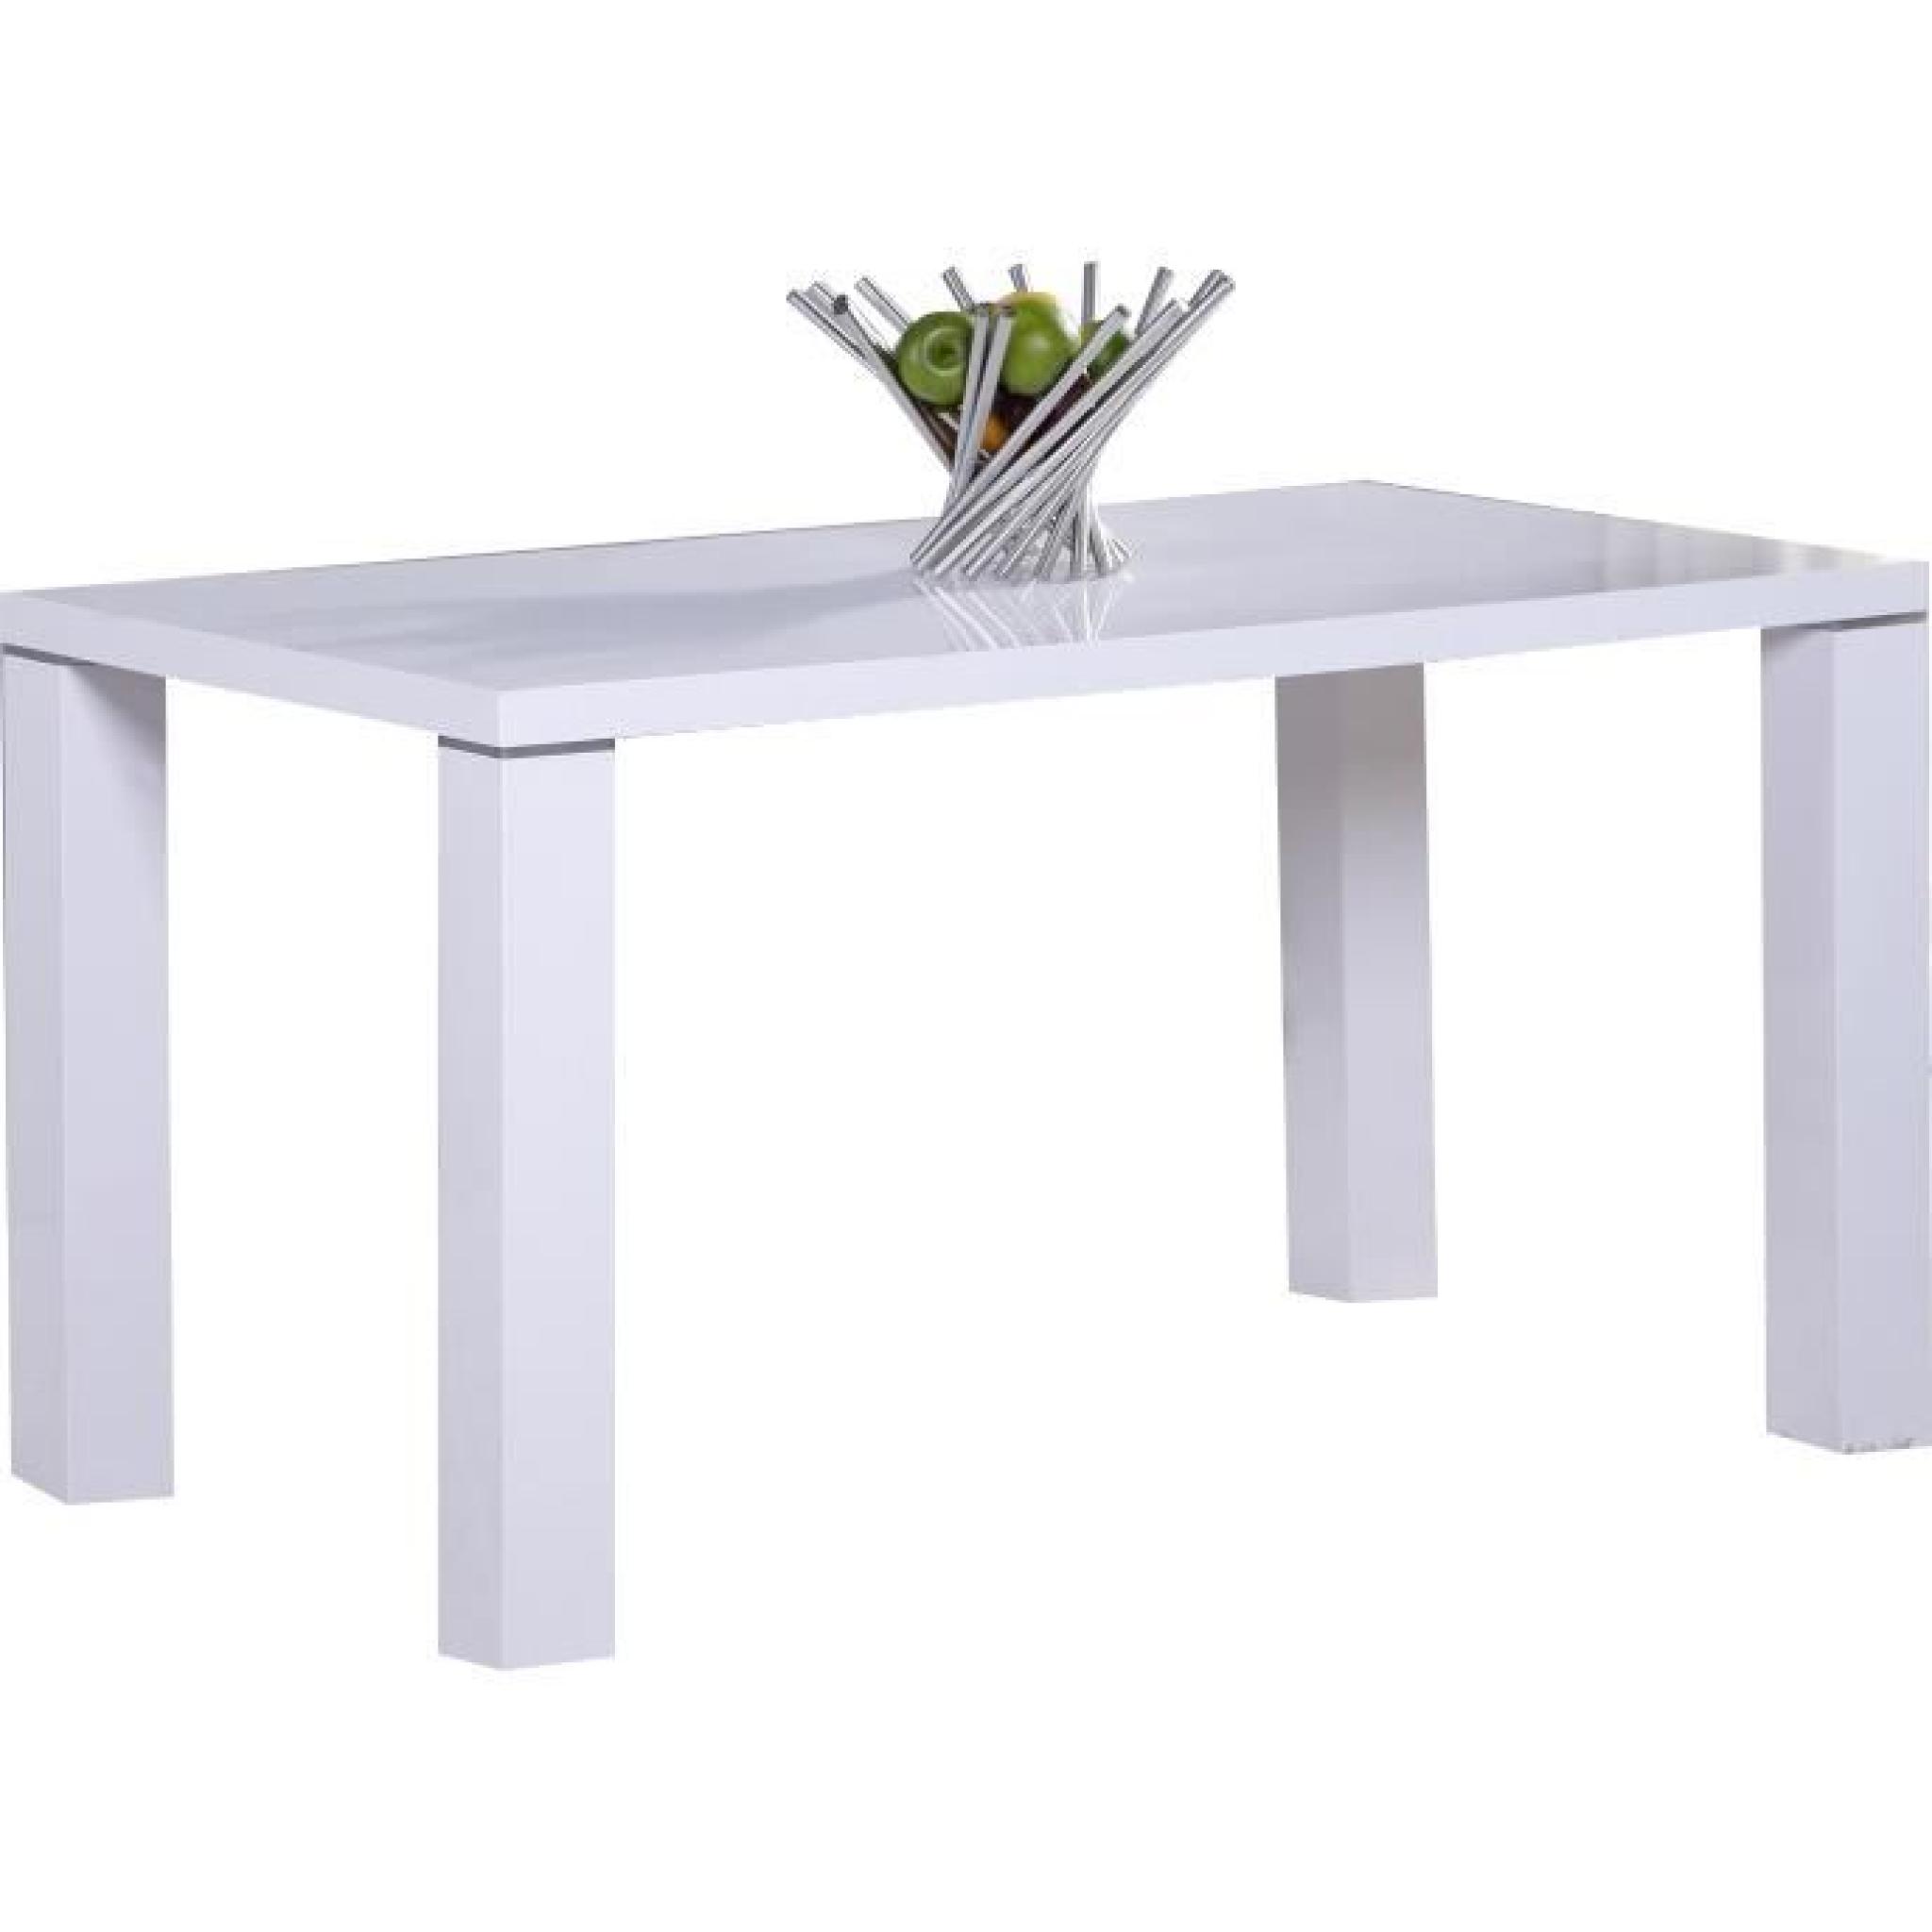 Table de cuisine 130 cm rectangulaire blanc design